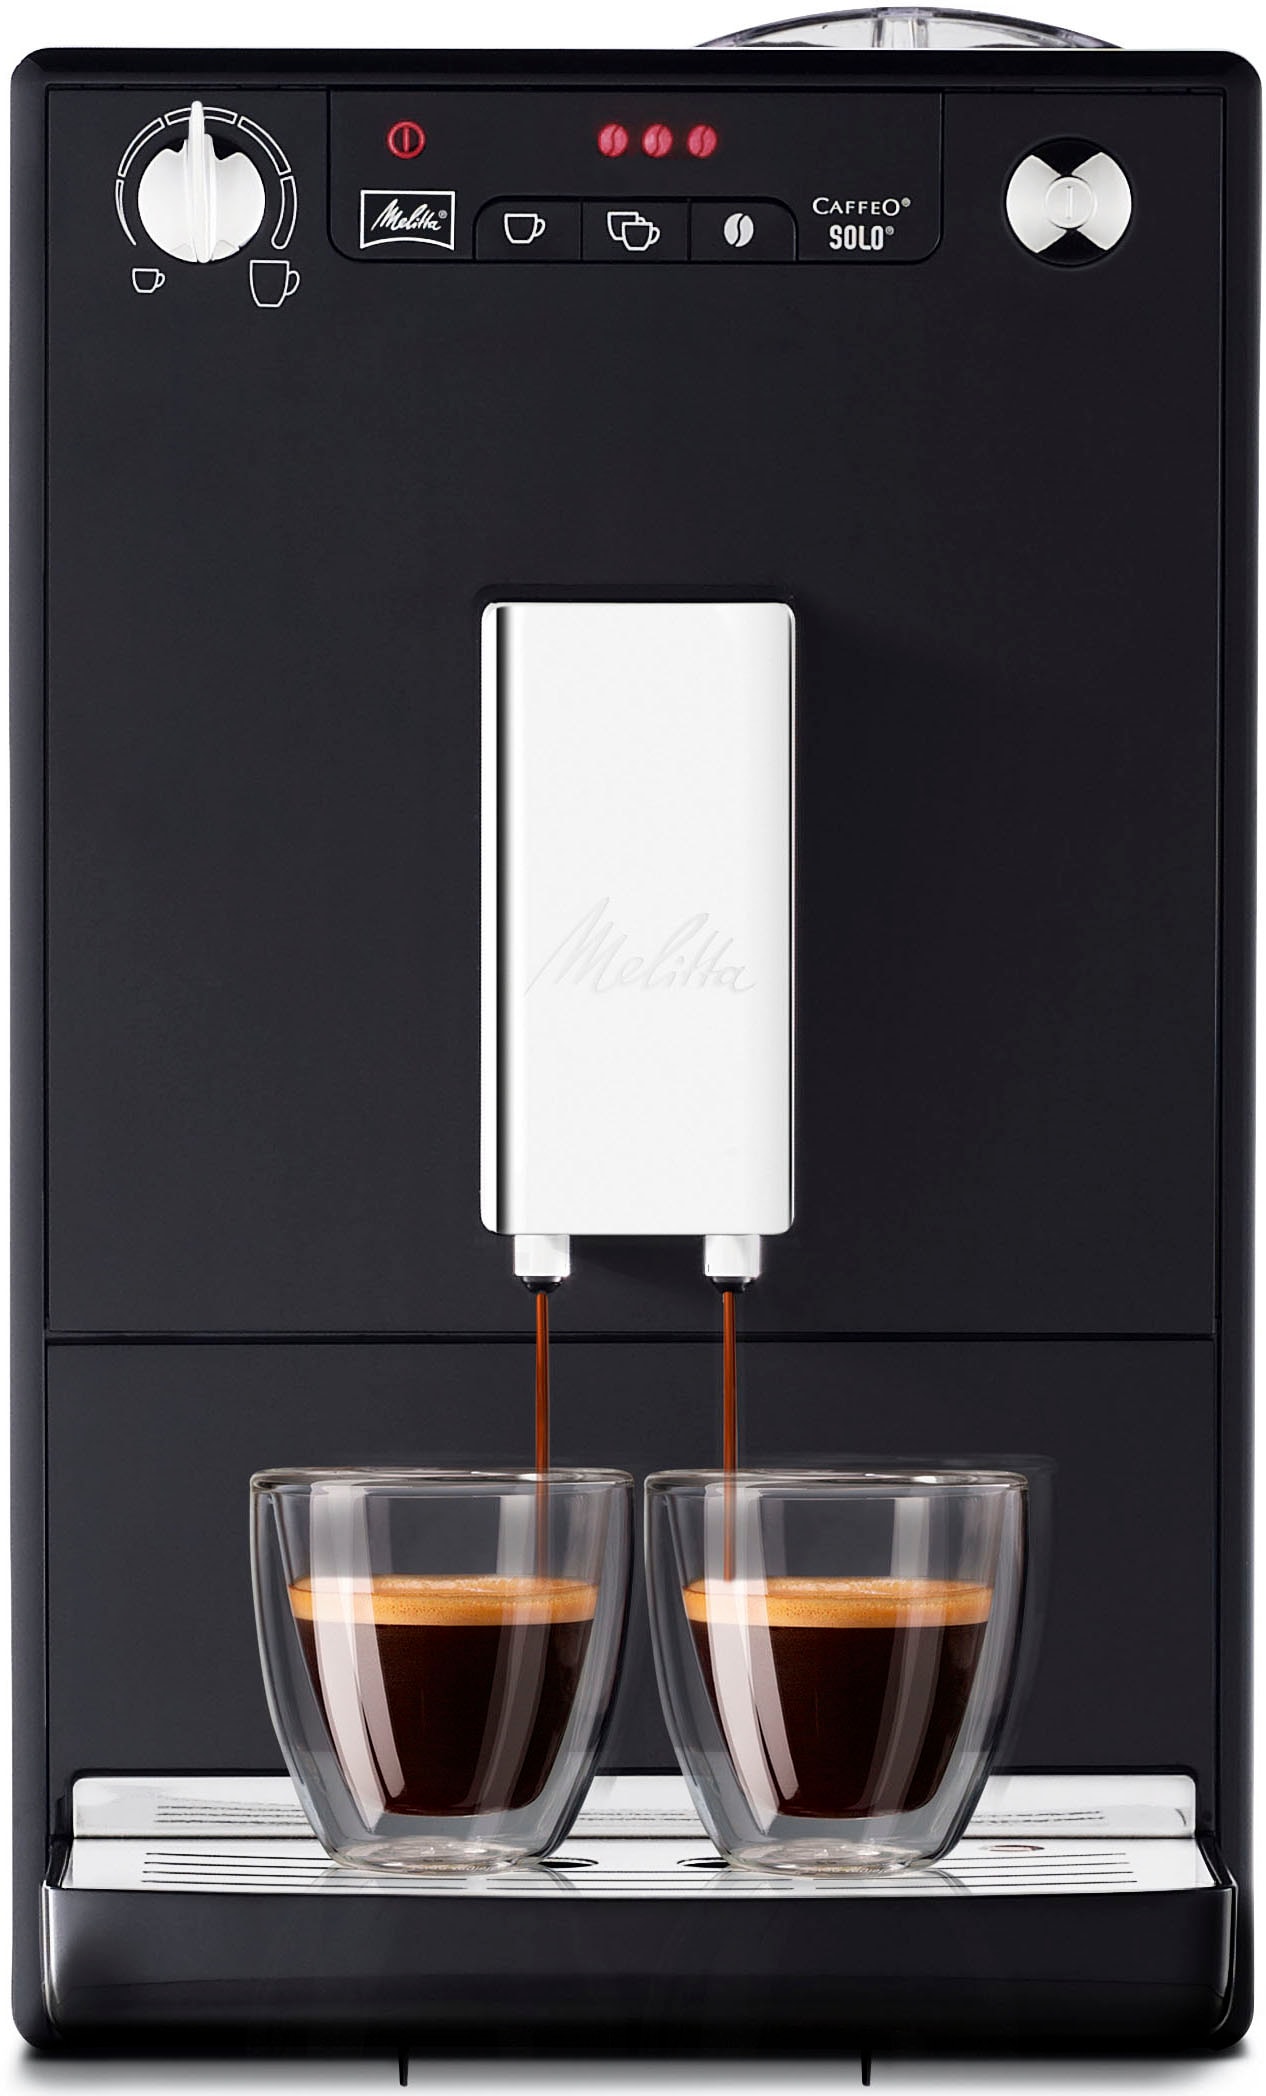 Melitta Kaffeevollautomat Perfekt crème nur Café & »Solo® für OTTO online bei schwarz«, 20cm Espresso, jetzt breit E950-201